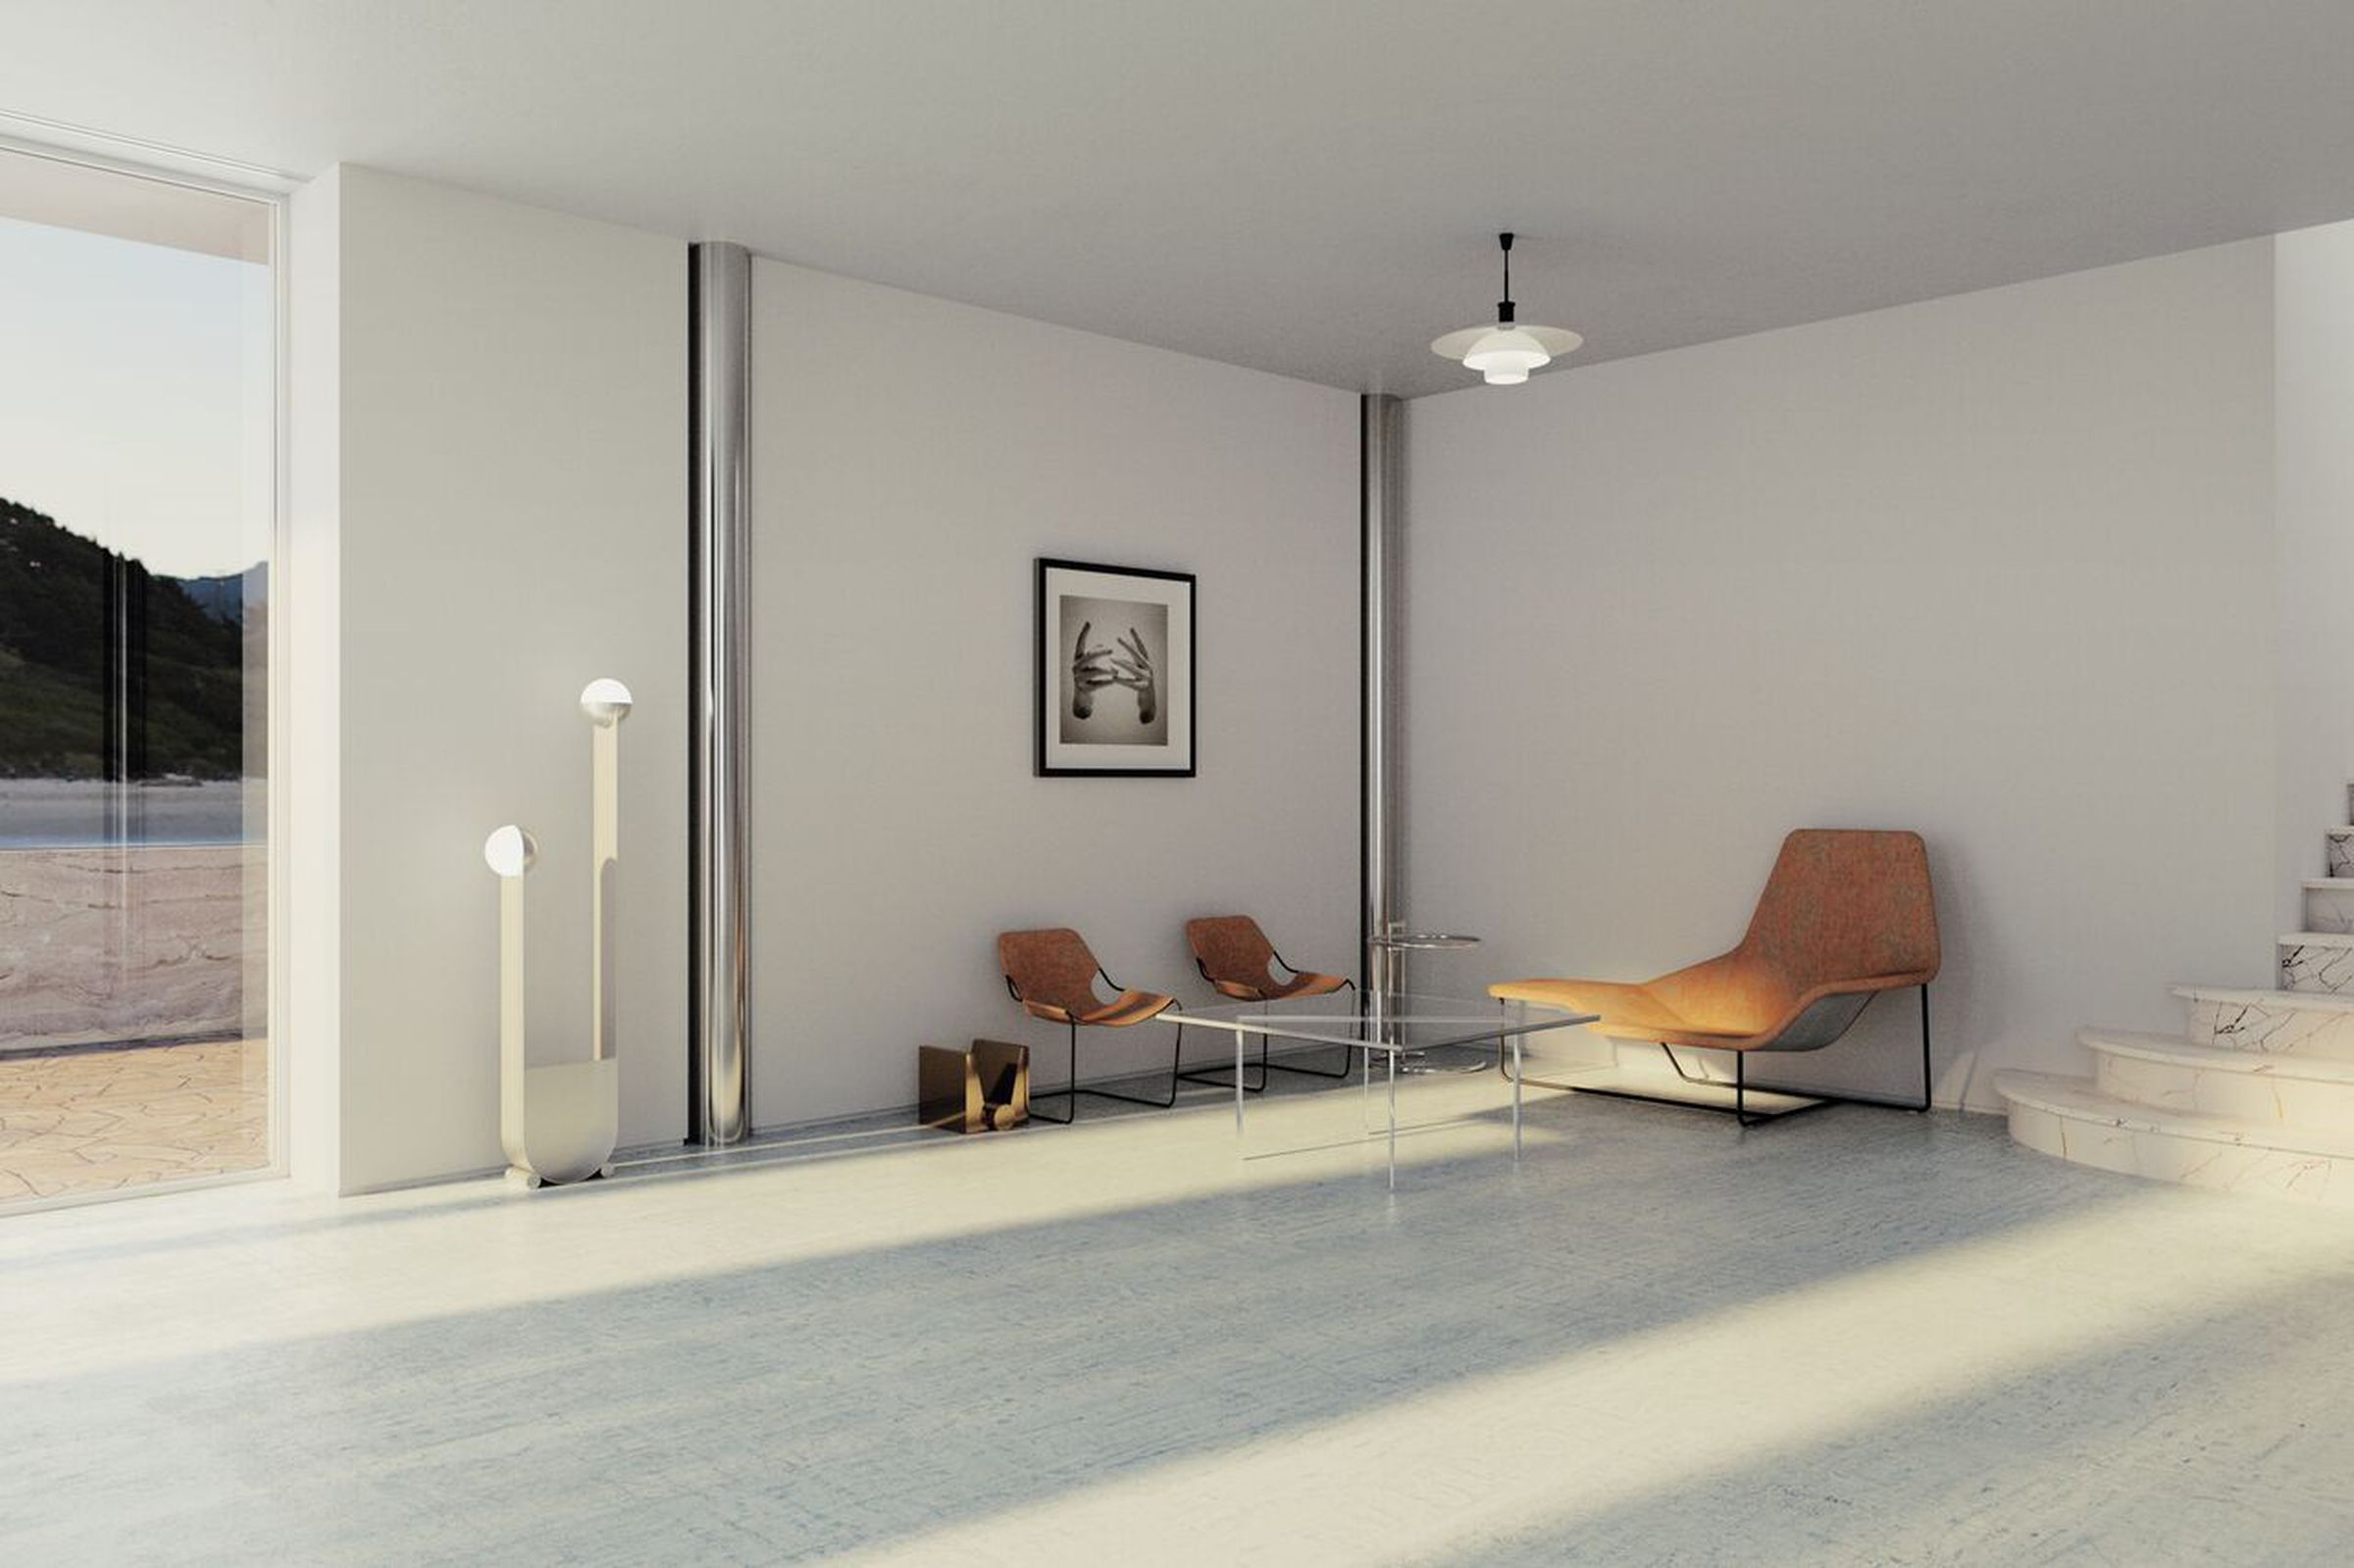 Interior design trend #5- Mies 2.0, featuring artwork by Esmeralda Kosmotopoulos